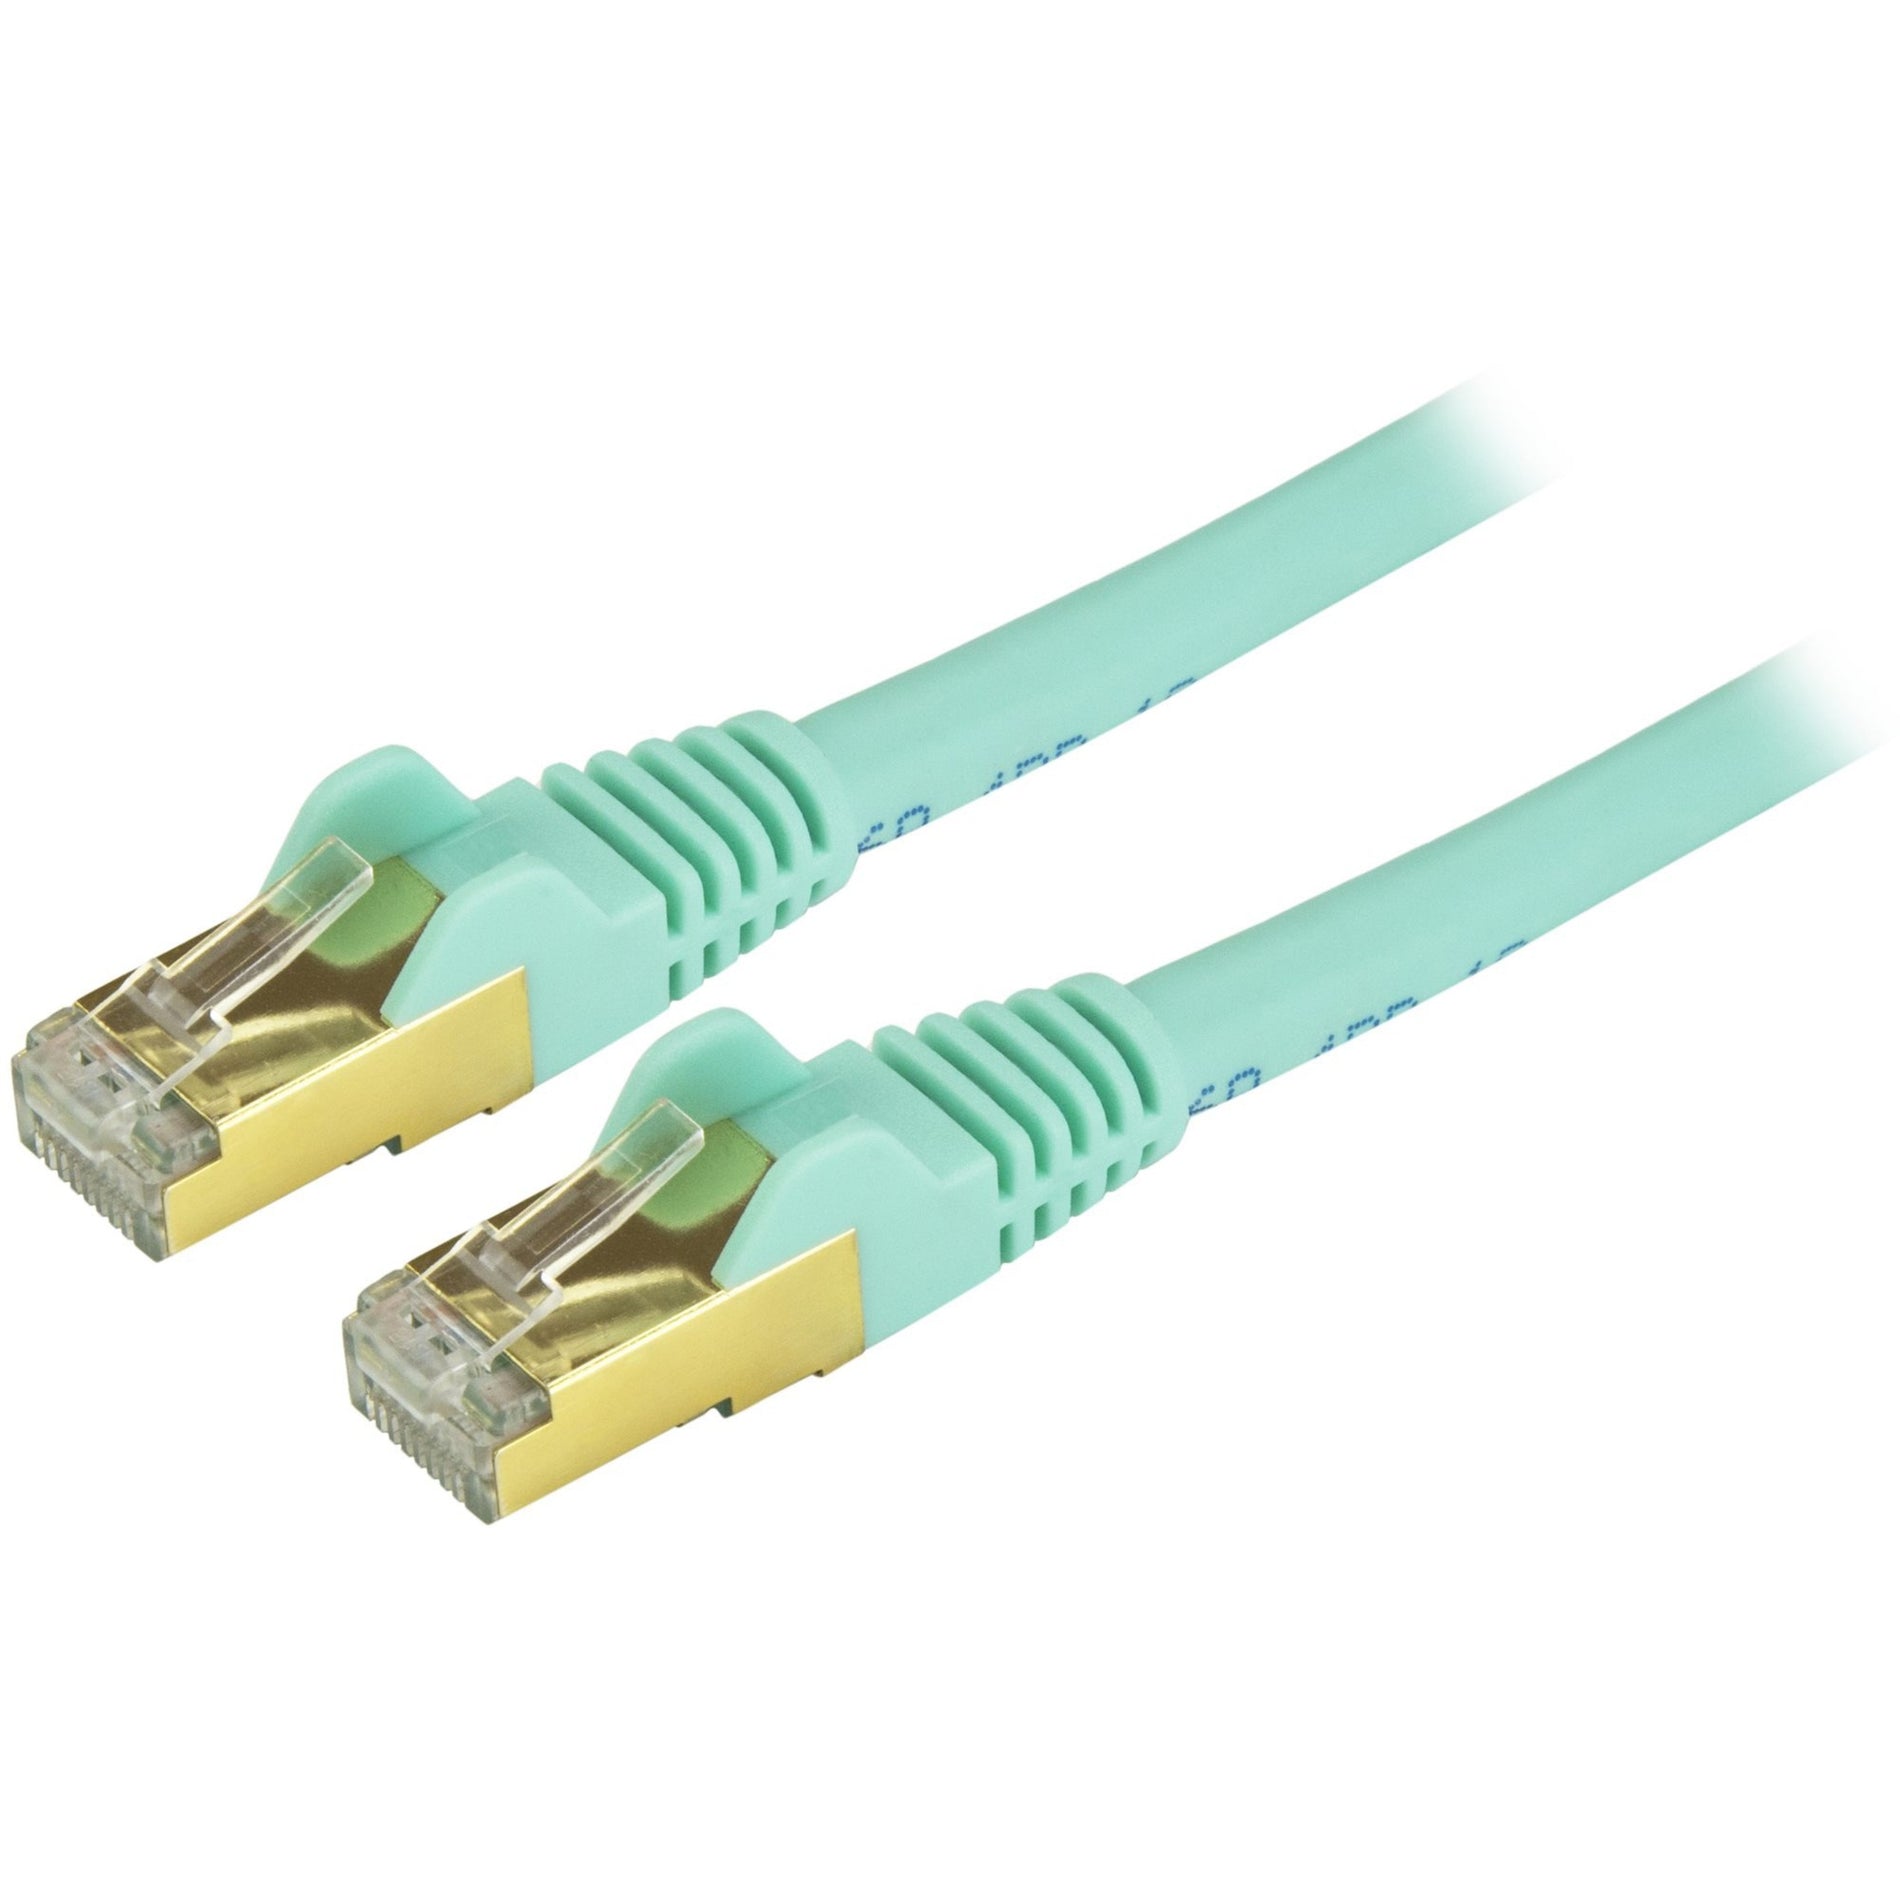 StarTech.com C6ASPAT20AQ Cat6a Ethernet Patch Cable - Shielded (STP) - 20 ft., Aqua, Long Ethernet Cord